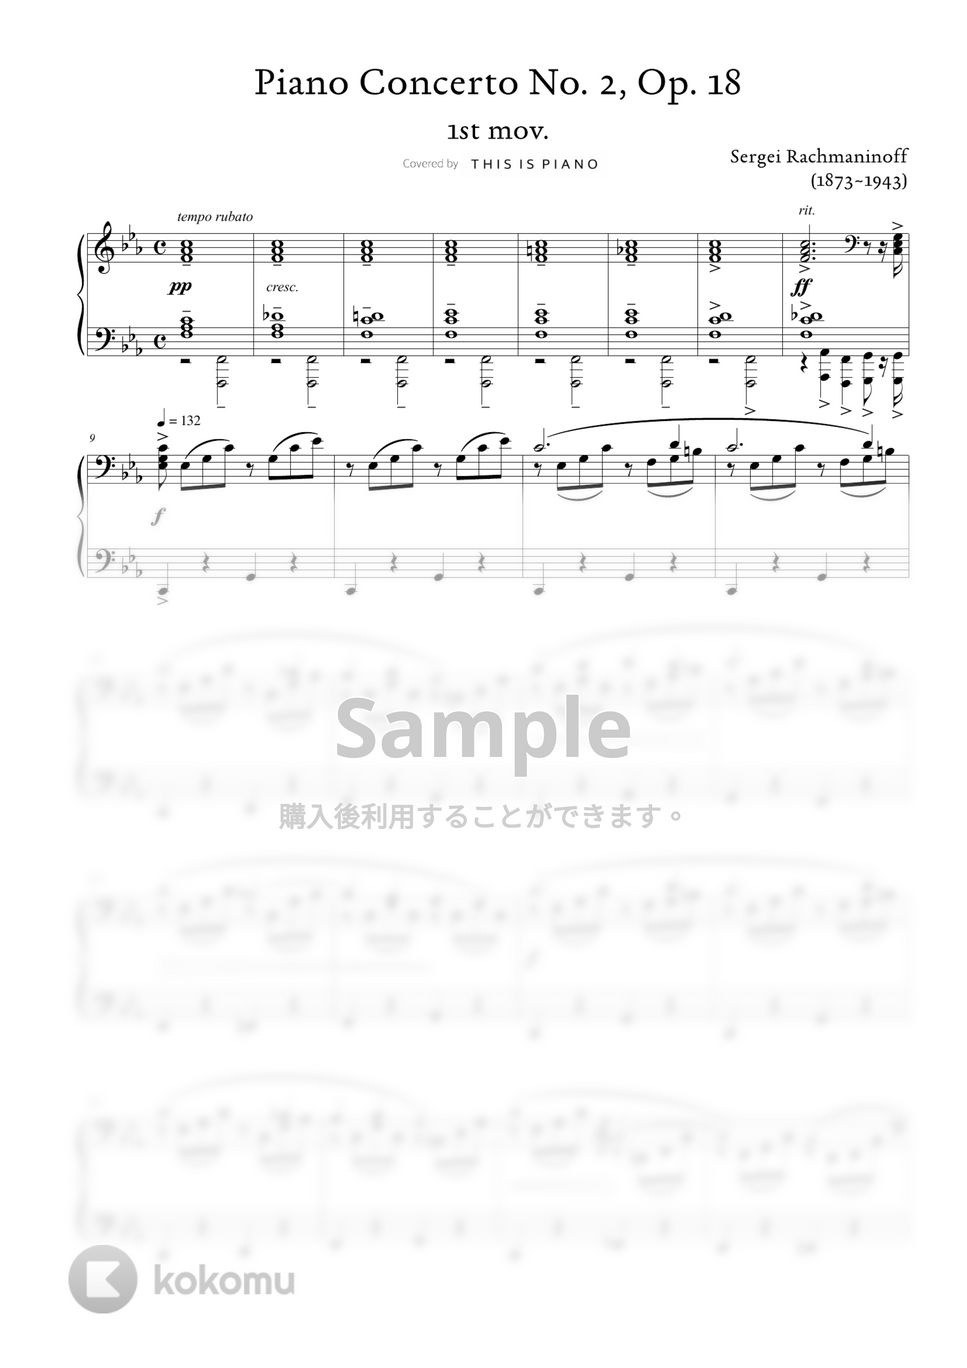 ラフマニノフ - ピアノ協奏曲第2番第1楽章 (中級バージョン) by THIS IS PIANO